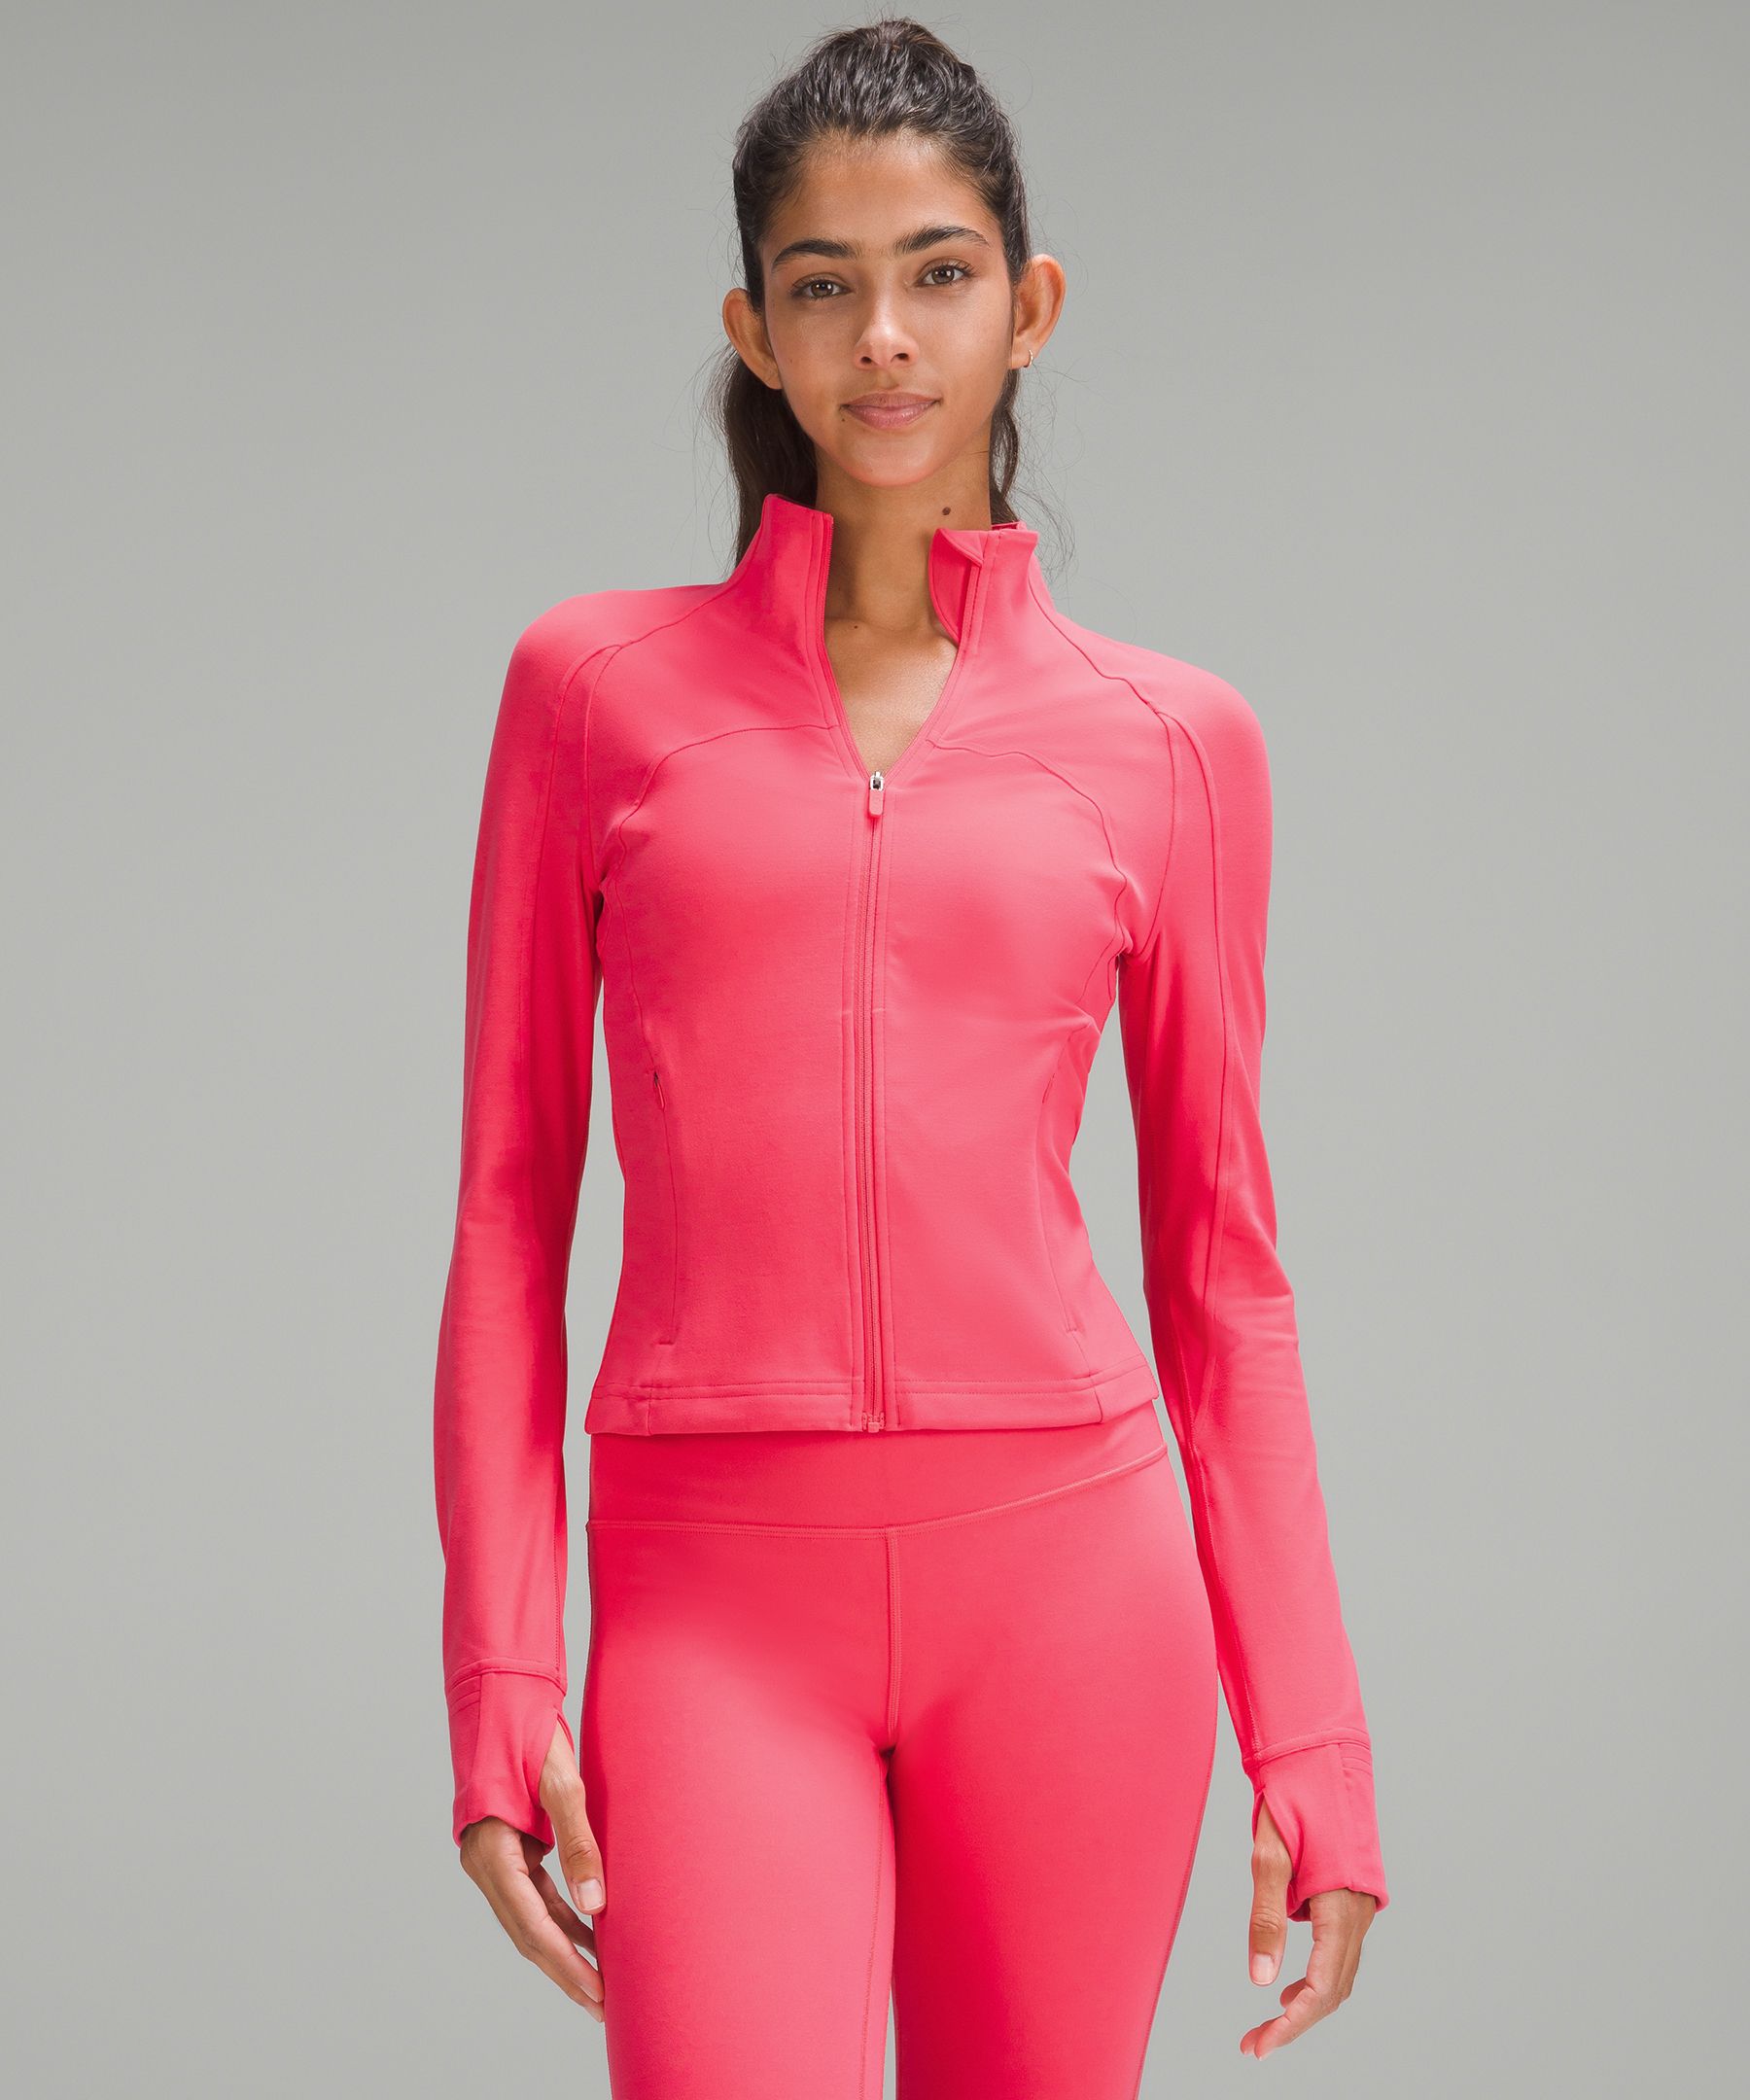 Hot pink Lululemon define jacket.